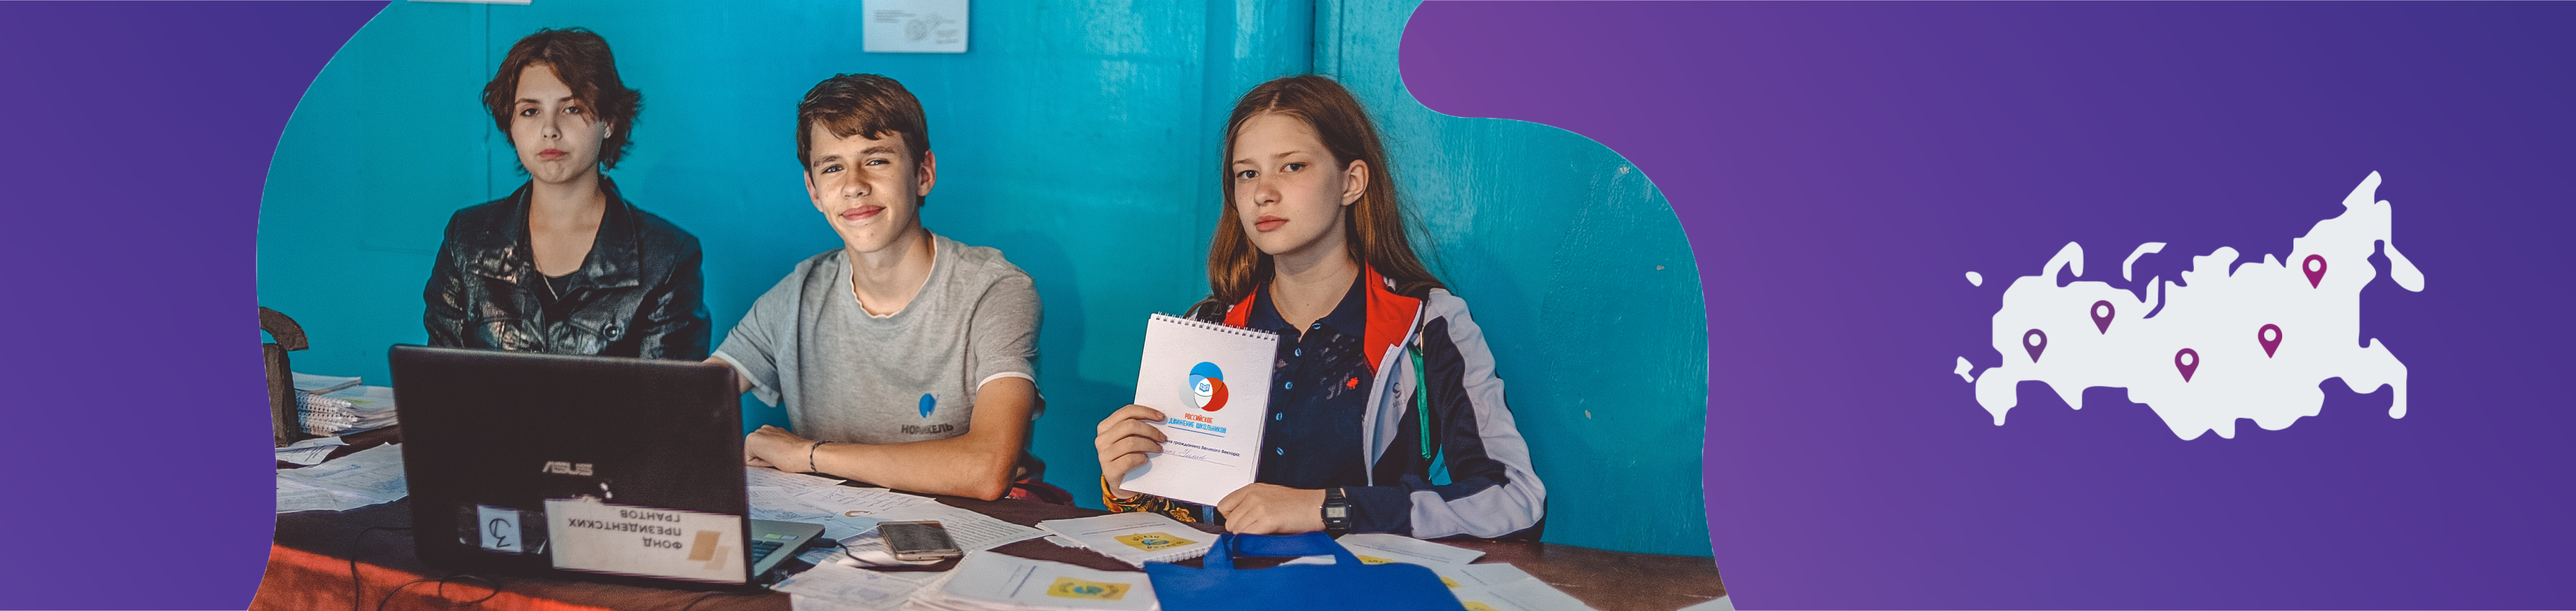 Конкурс портфолио детского самоуправления образовательных организаций Забайкальского края